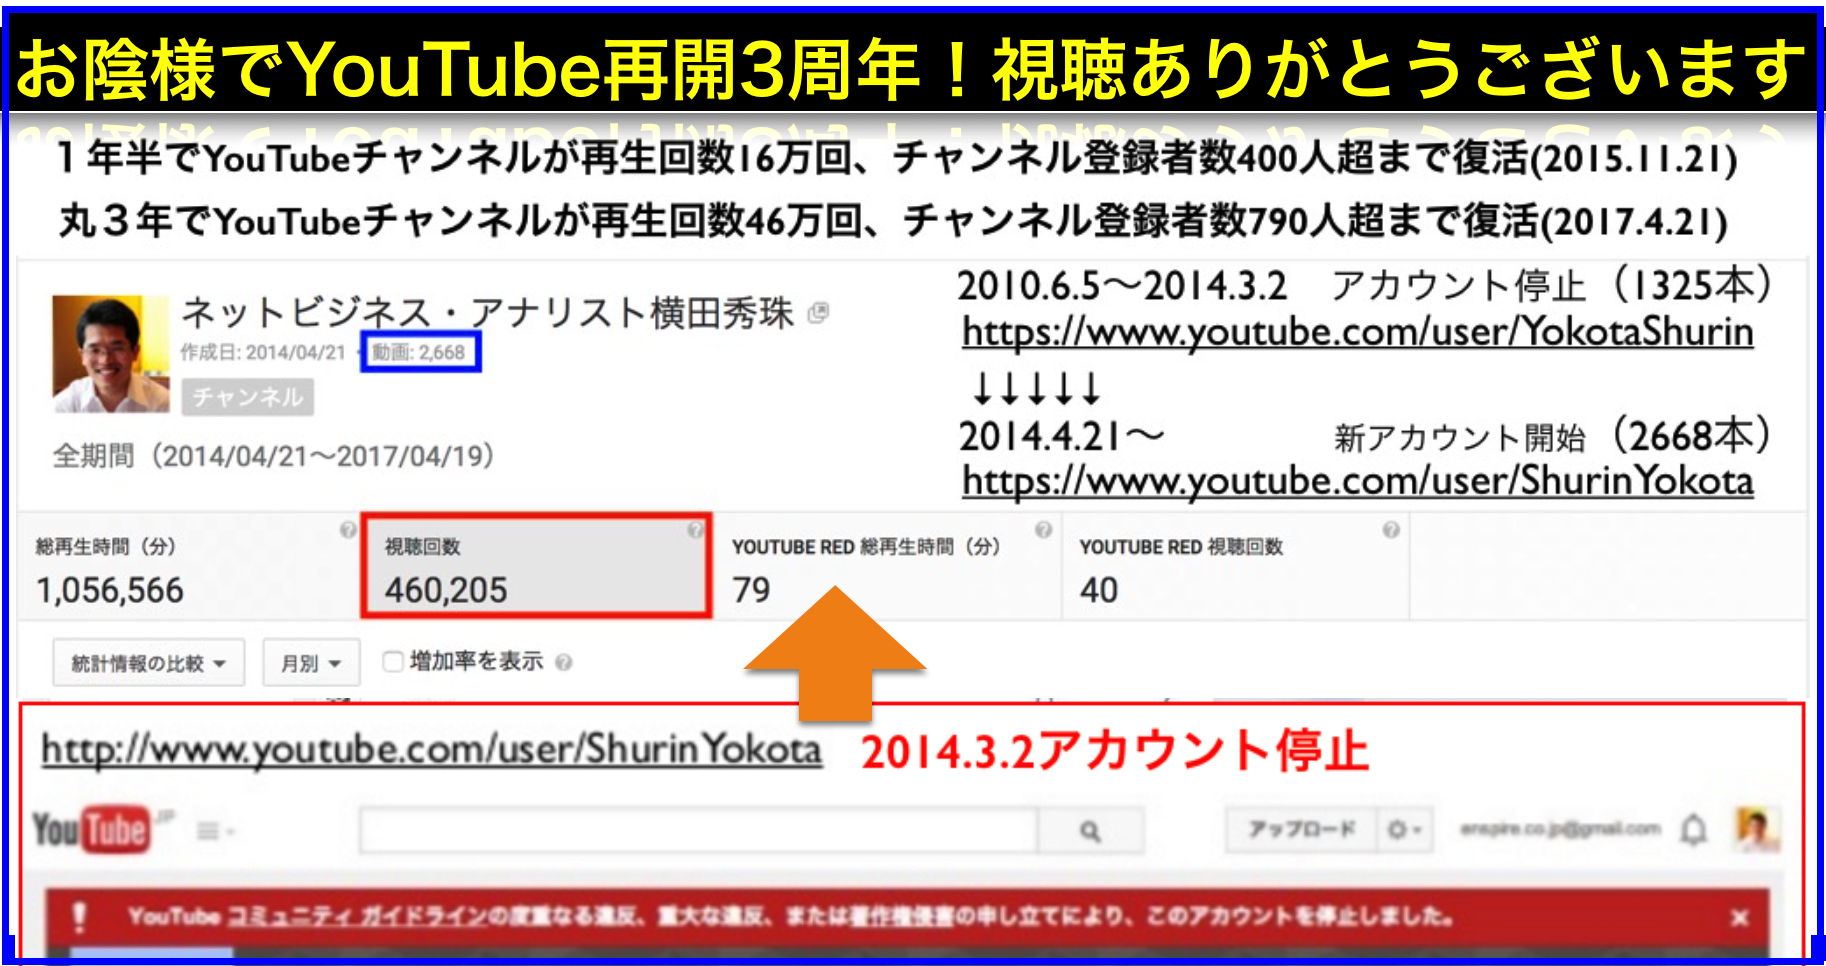 YouTube丸3年で再生回数46万回チャンネル登録者数790人